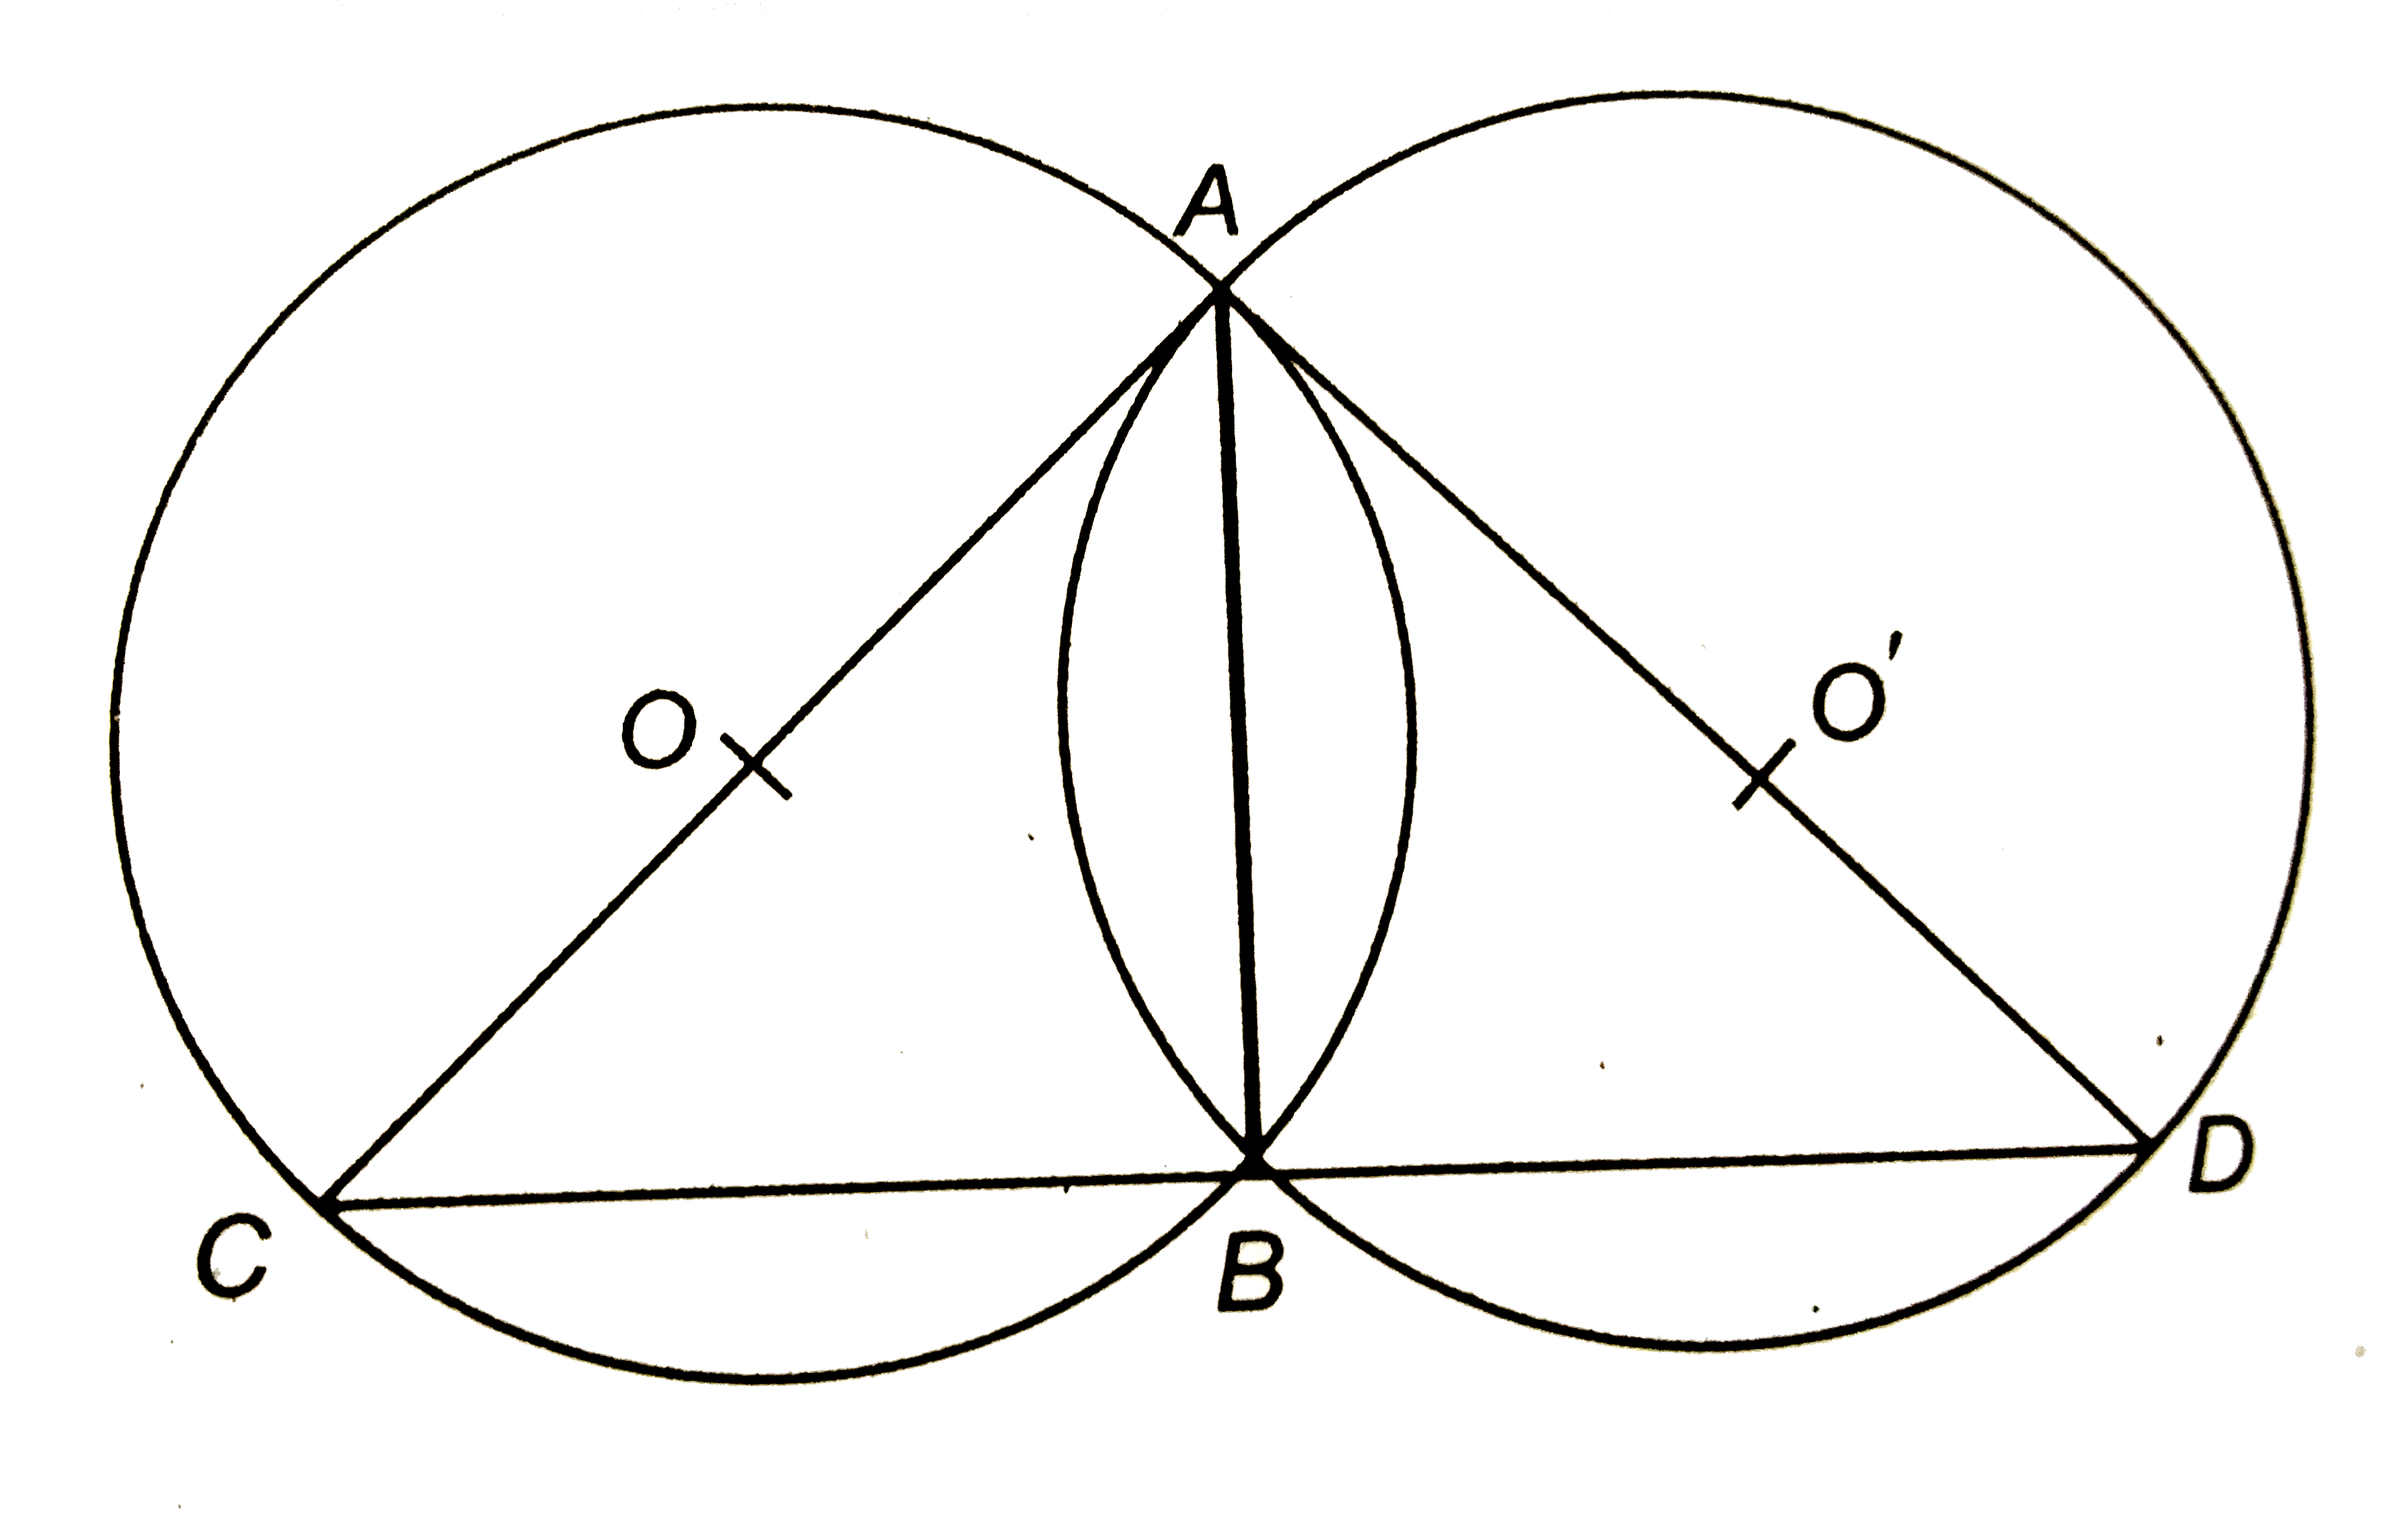 संलग्न चित्र में, दो वृत्त A और B पर प्रतिच्छेद करते हैं और AC, AD क्रमश: वृत्तों के व्यास हैं | सिद्ध कीजिए कि बिन्दु C, B और D संरेख हैं |